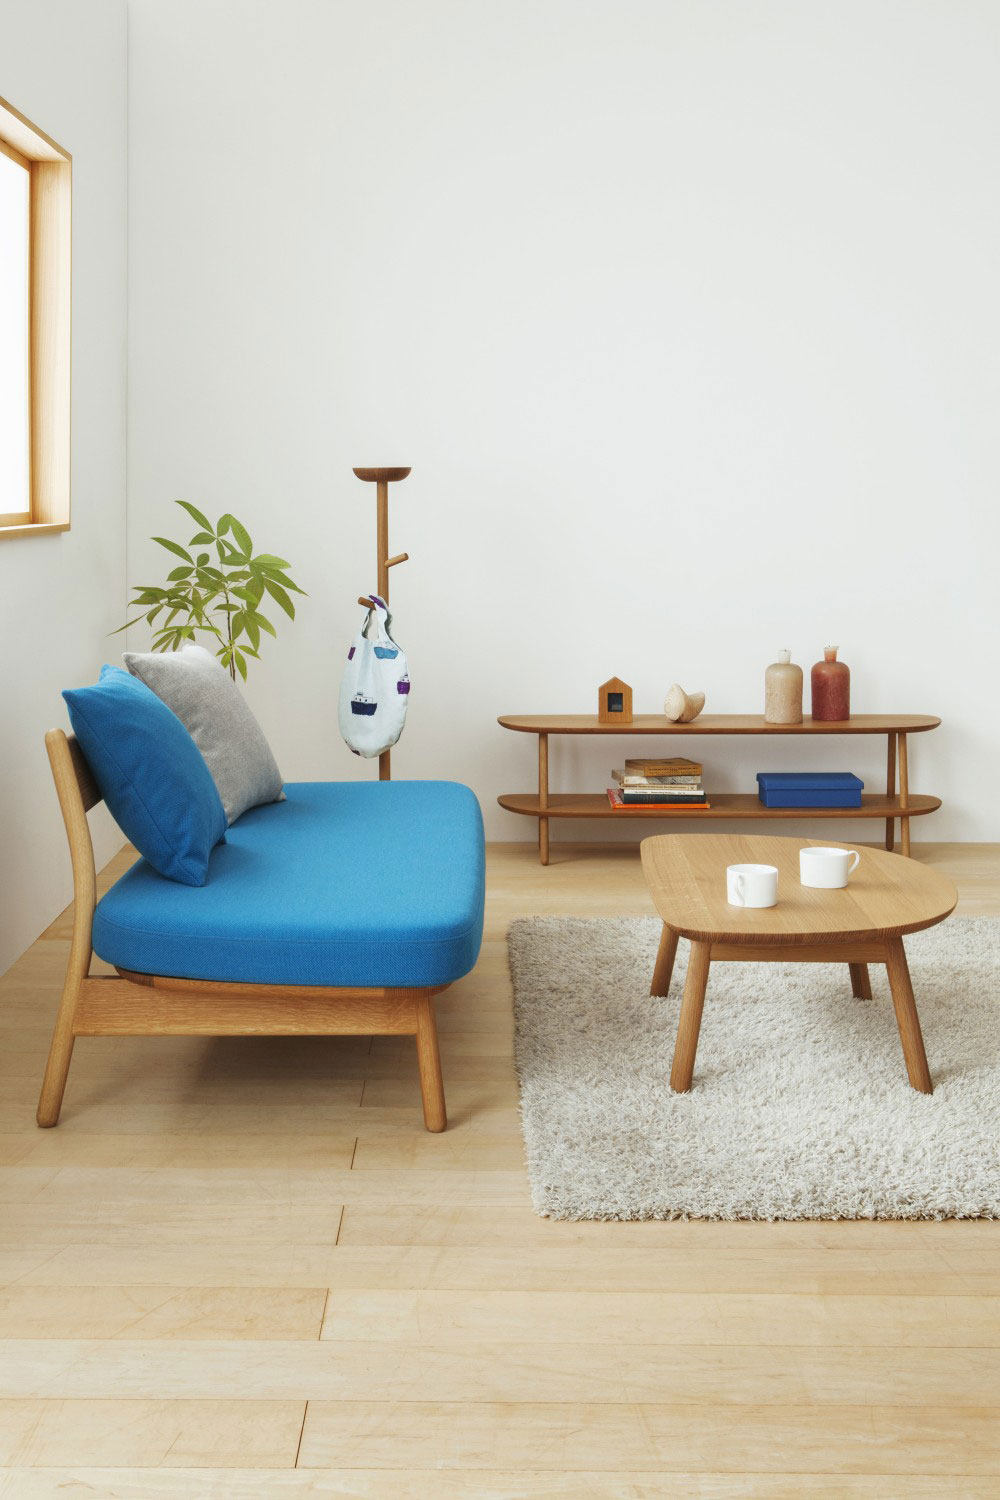 petite-furniture-from-torafu-architects-4.jpg